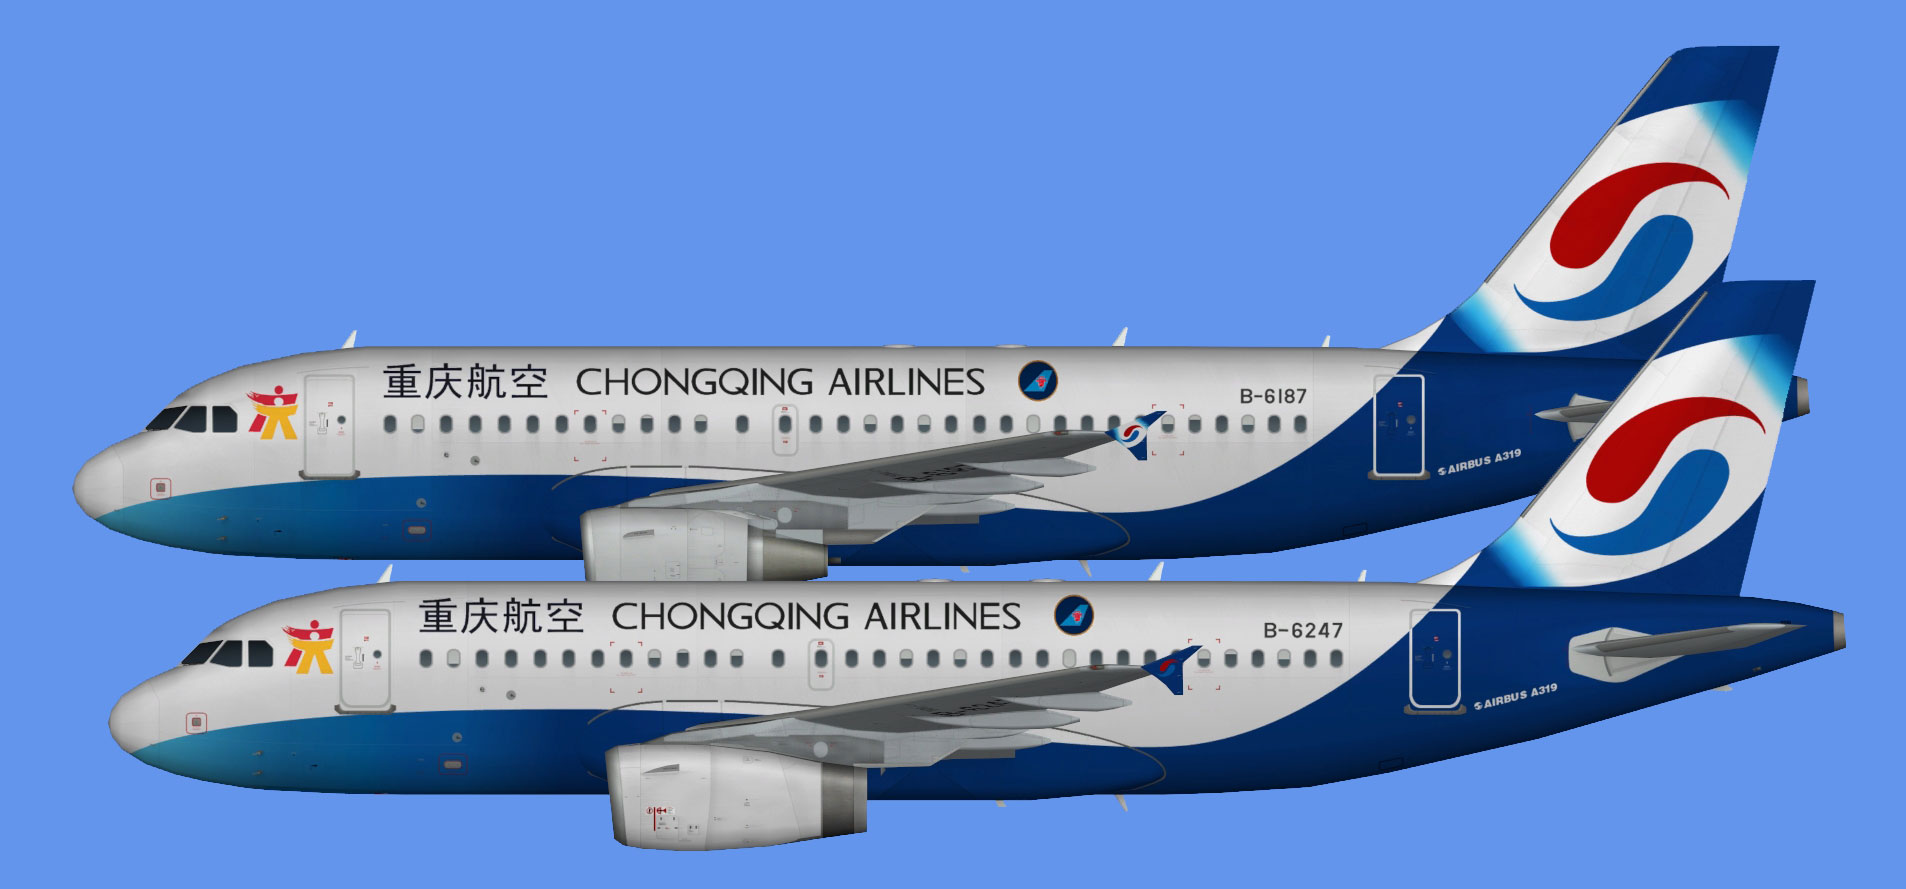 Chongqing Airlines A319 fleet